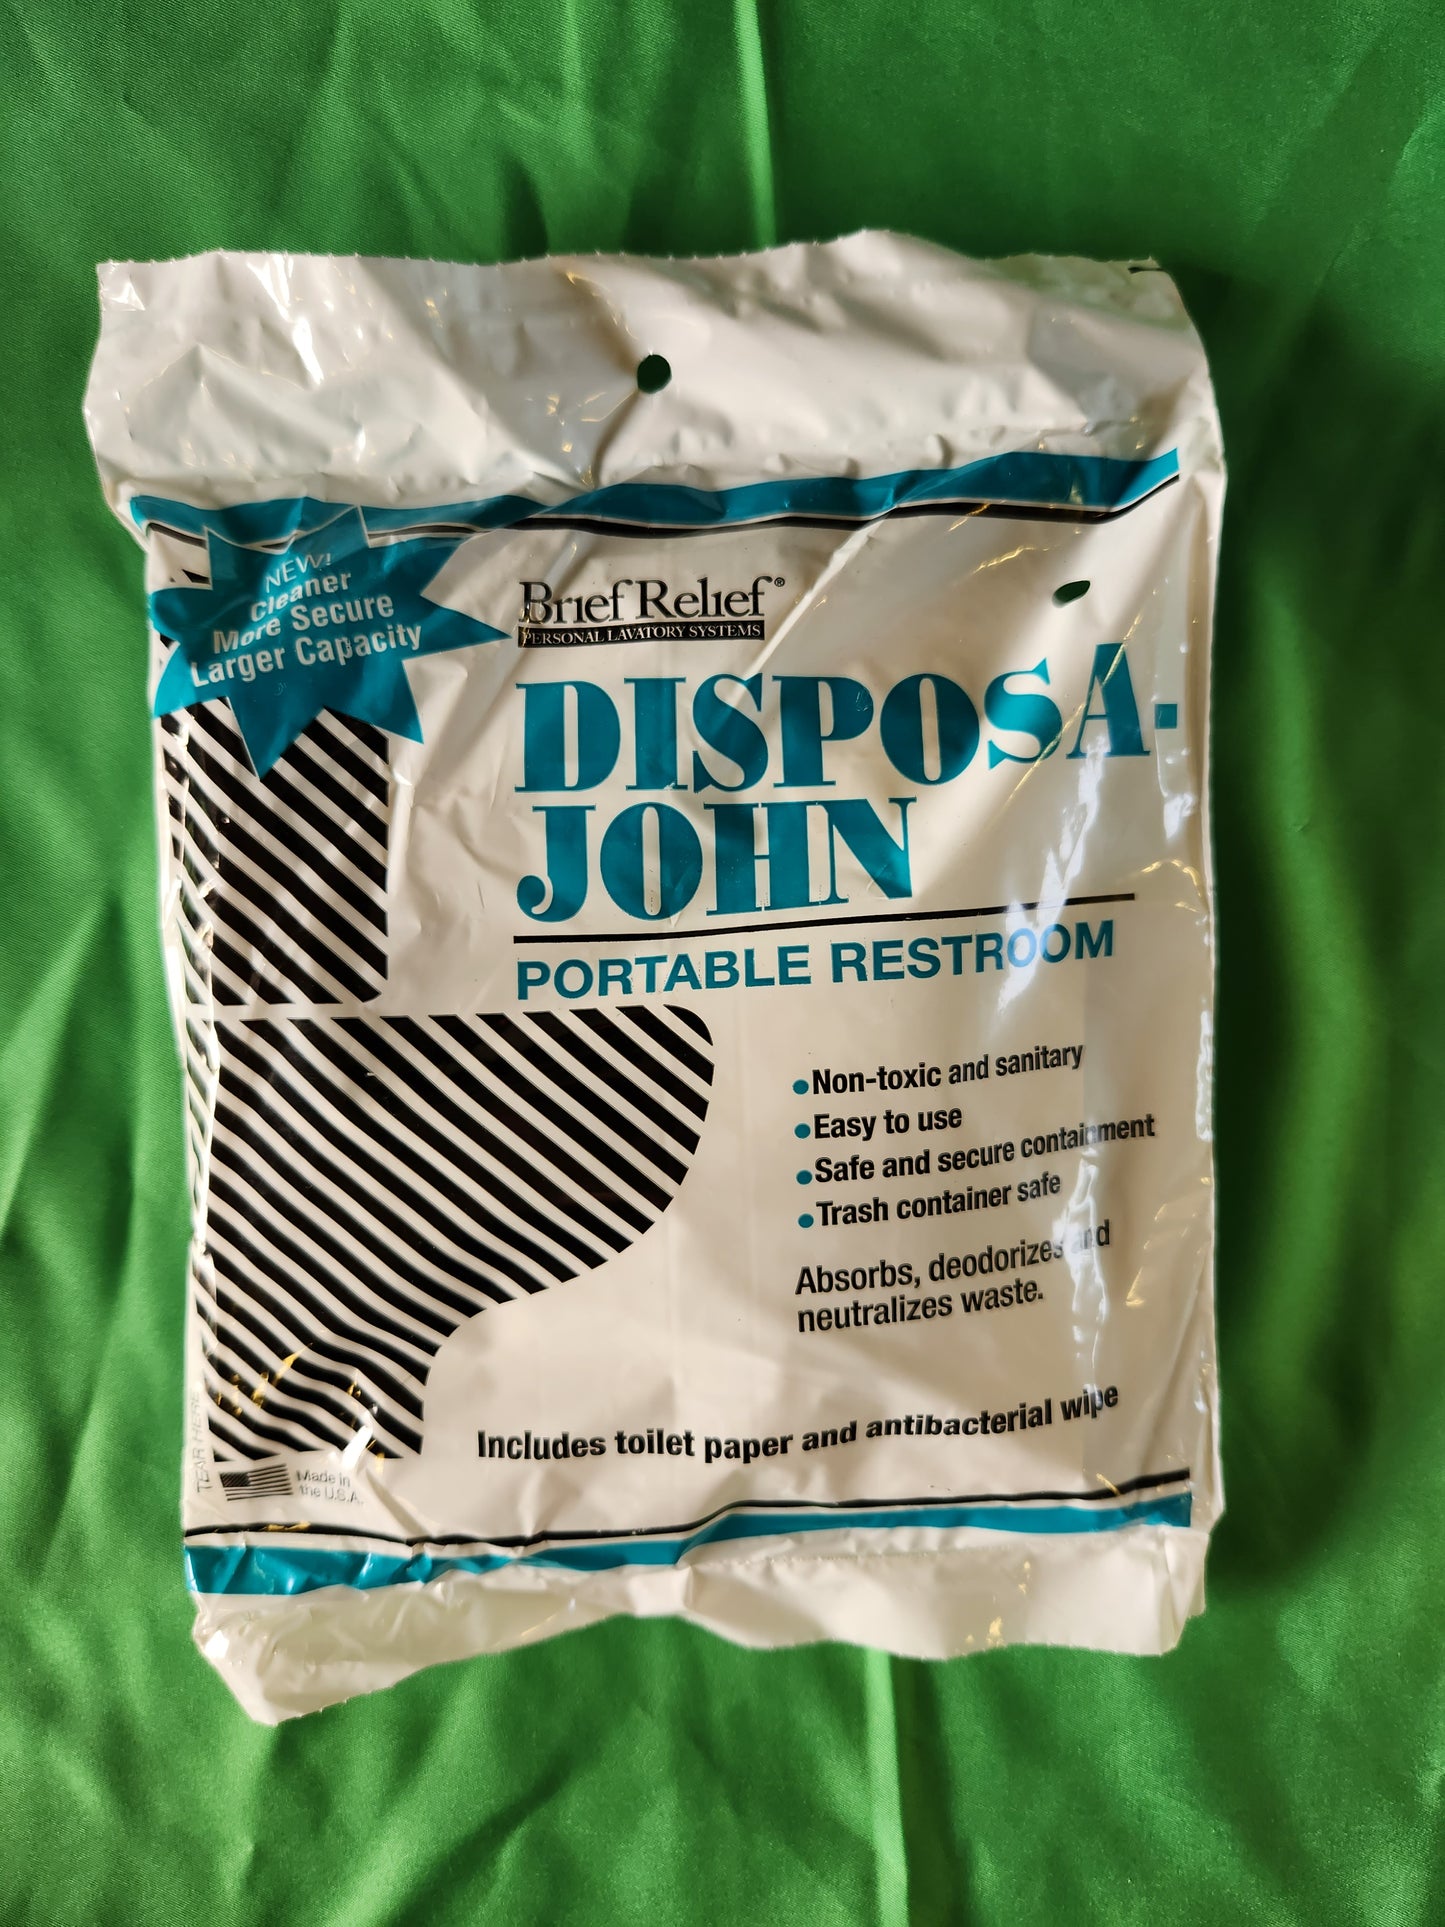 
                  
                    Disposa-John Portable Restroom (Brief Relief)
                  
                